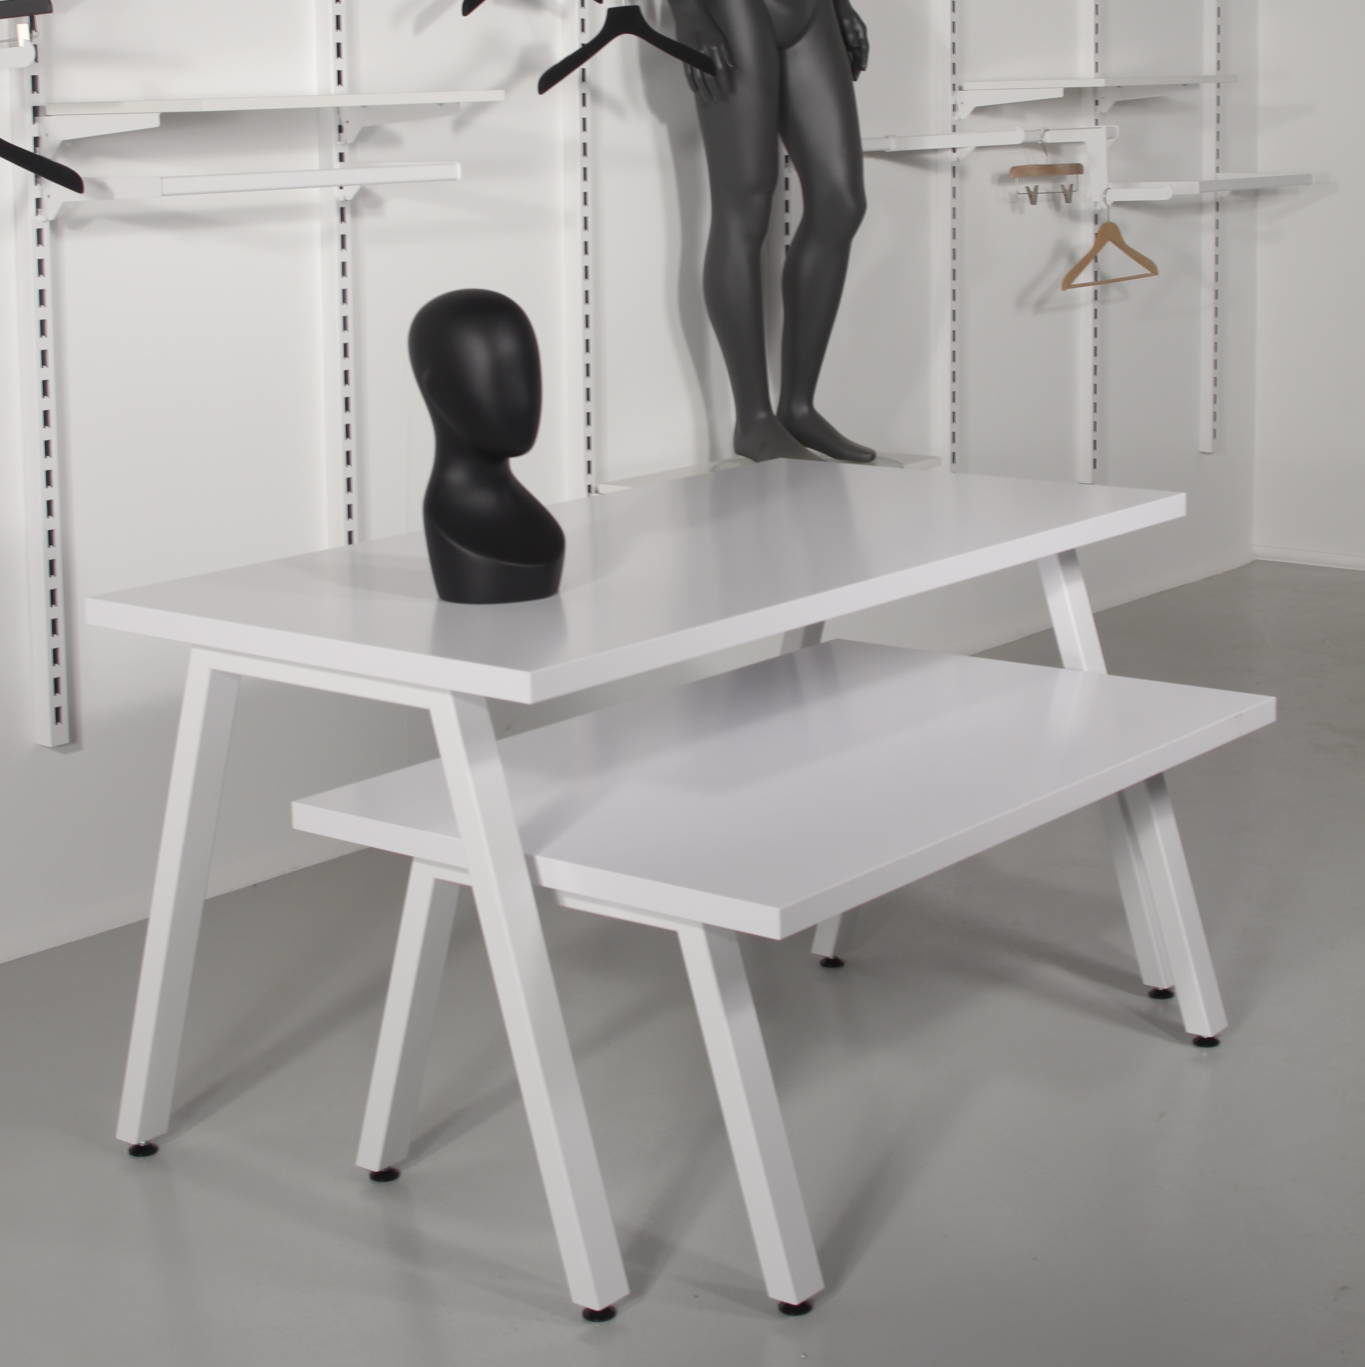 salgsborde i hvid med skråtstillede metalben.